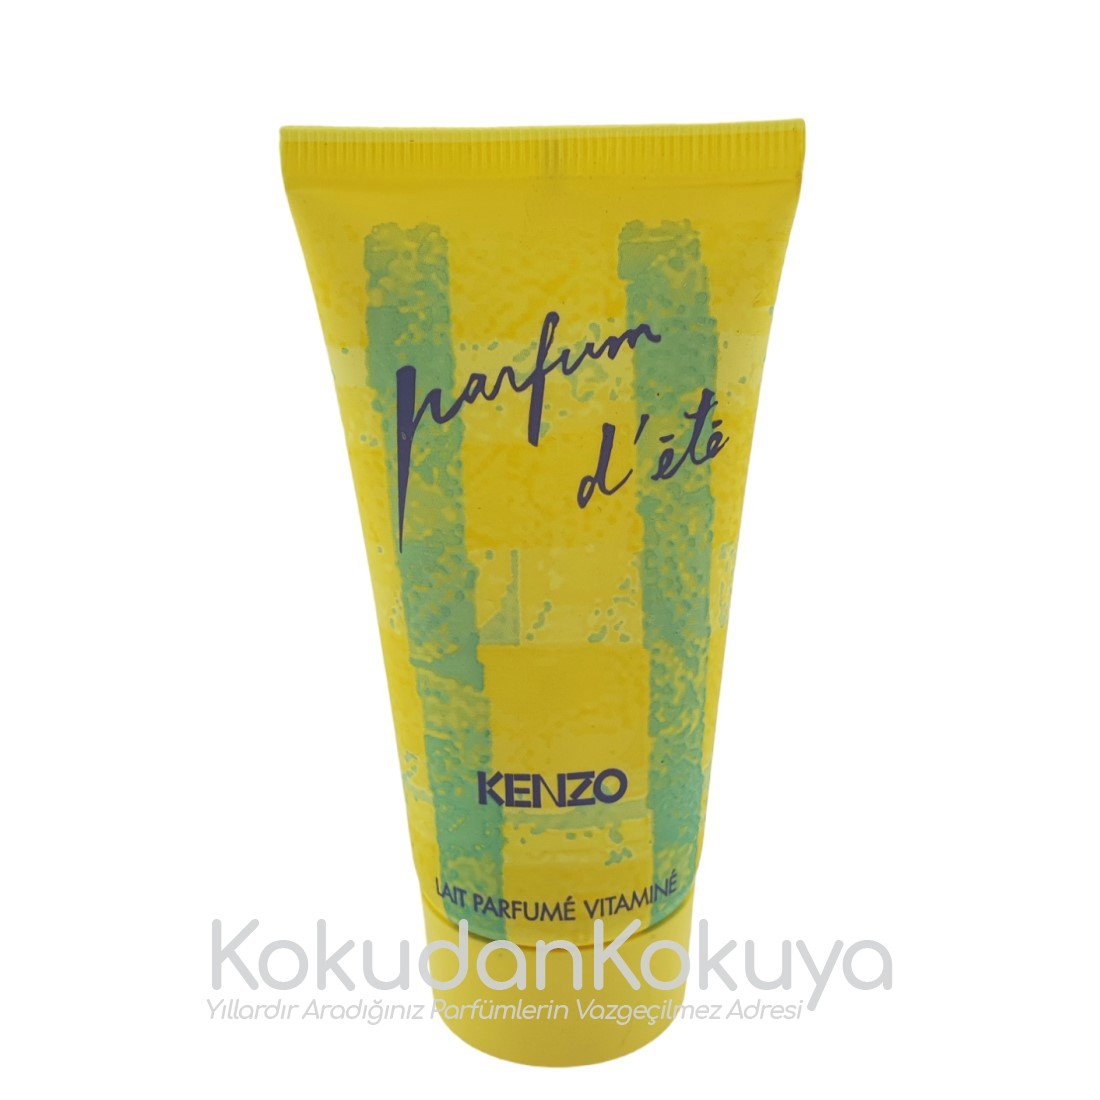 KENZO Parfum D'Ete (Vintage 1) Vücut Bakım Ürünleri Kadın 50ml Vücut Losyonu 